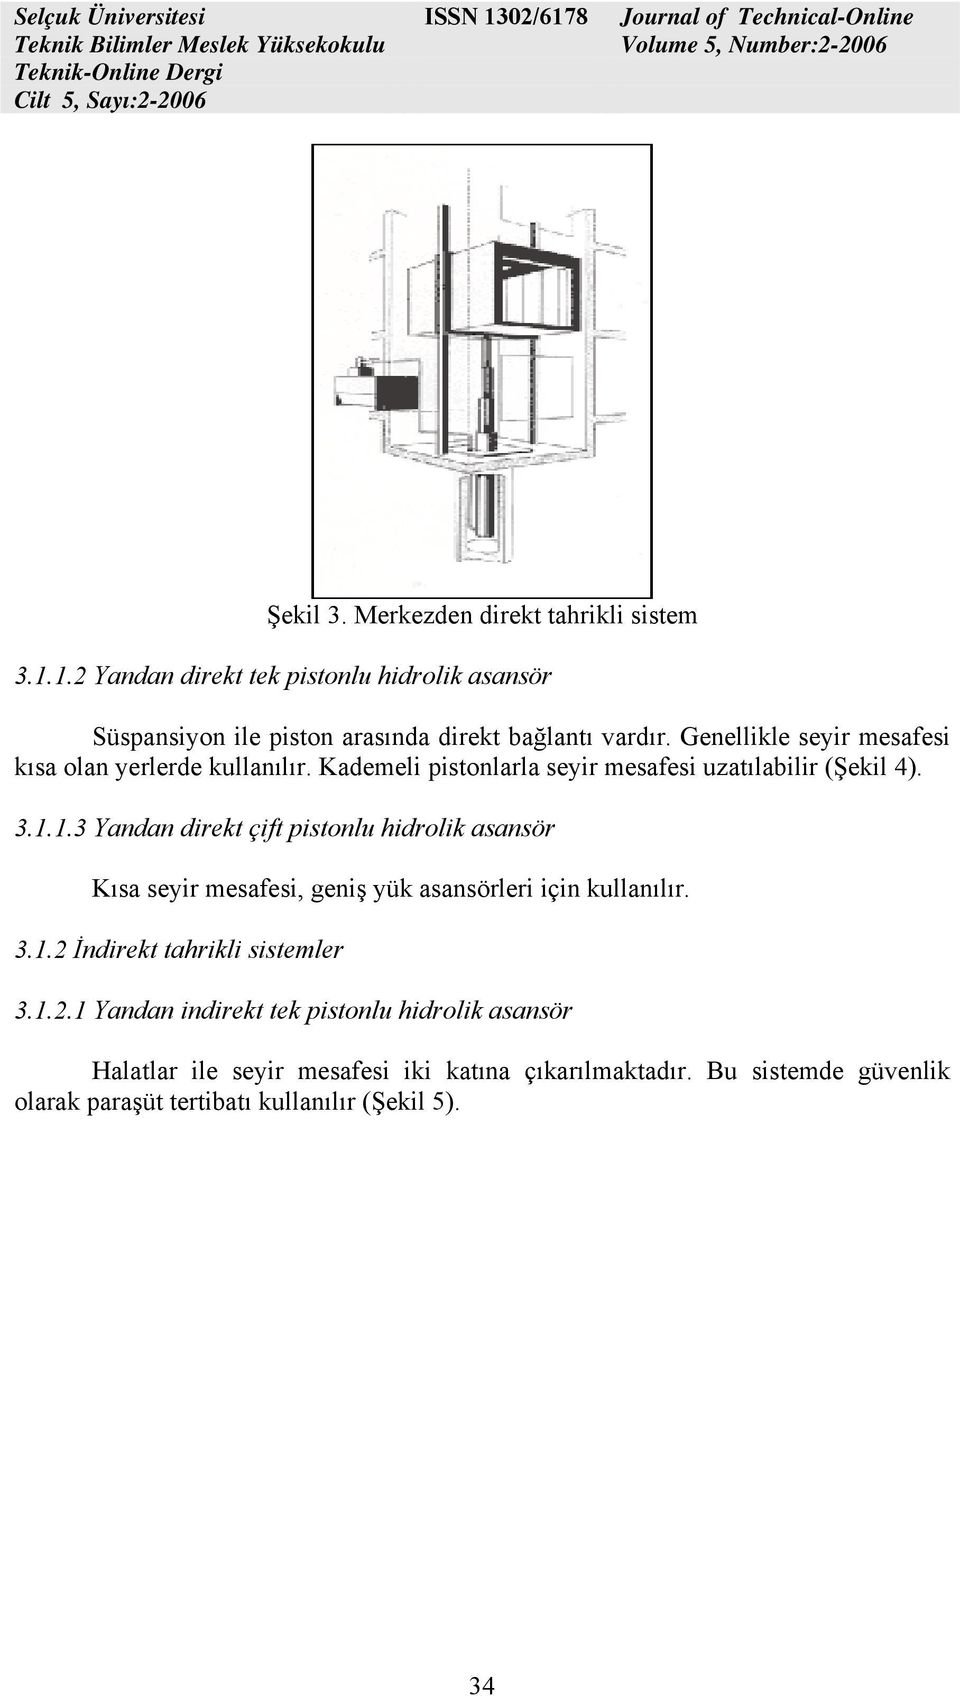 1.3 Yandan direkt çift pistonlu hidrolik asansör Kısa seyir mesafesi, geniş yük asansörleri için kullanılır. 3.1.2 